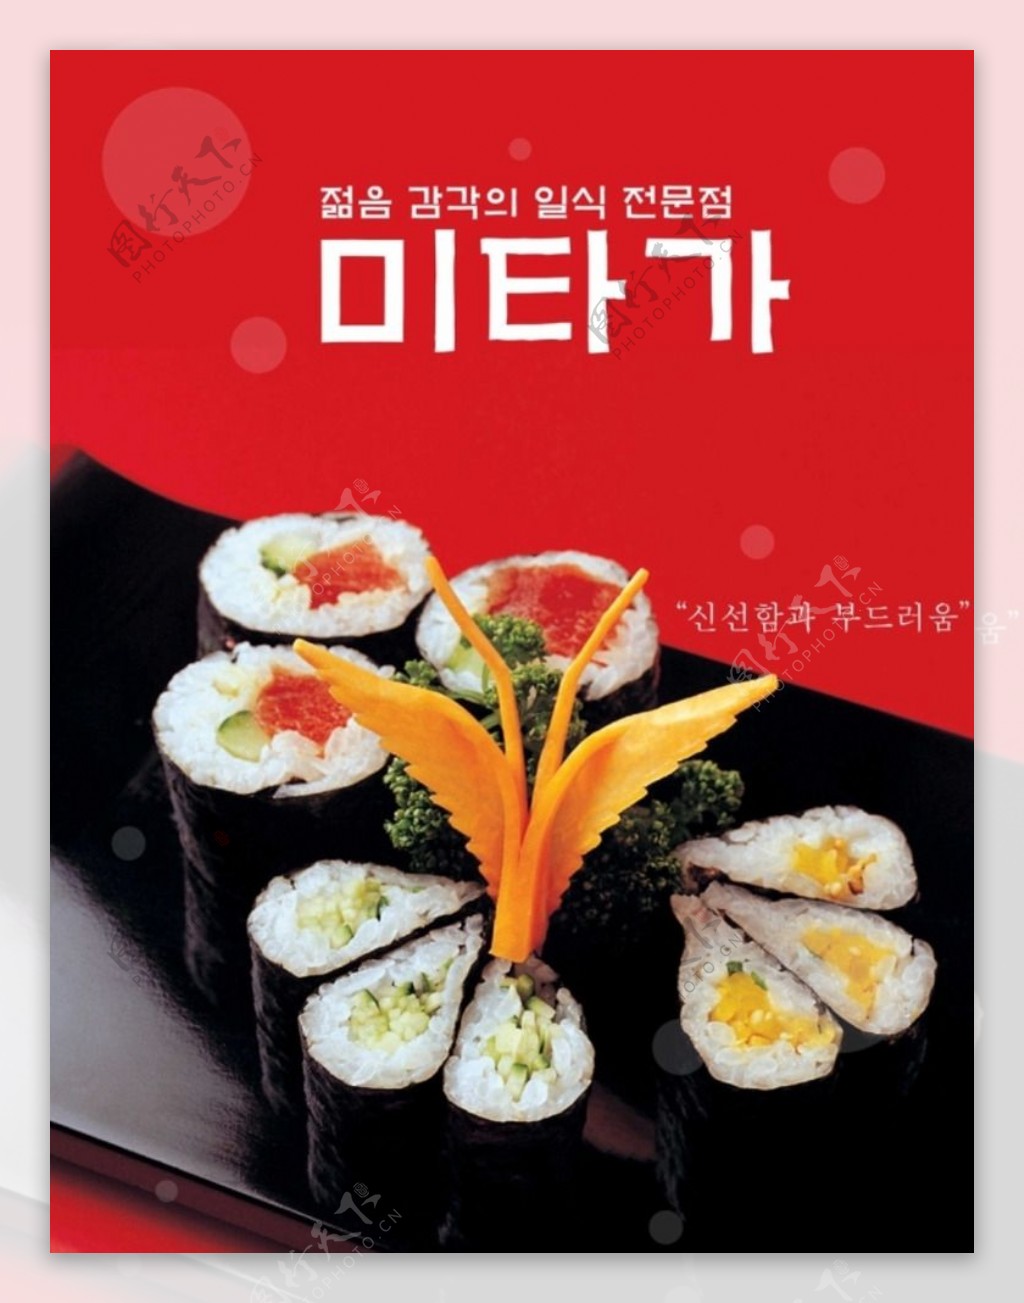 美味寿司海报图片